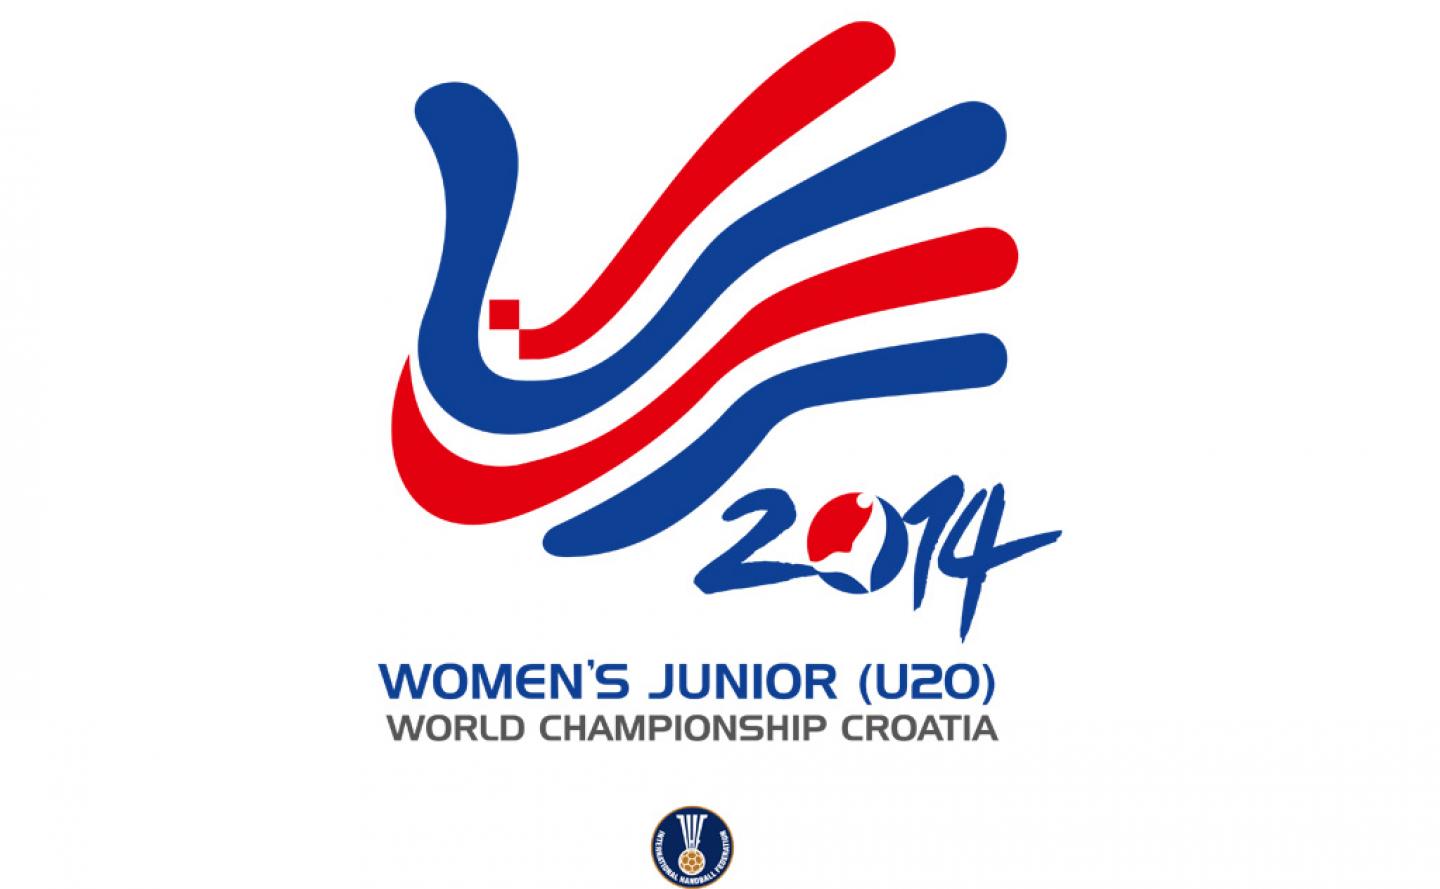 Match schedule for Women’s Junior (U20) WCh online